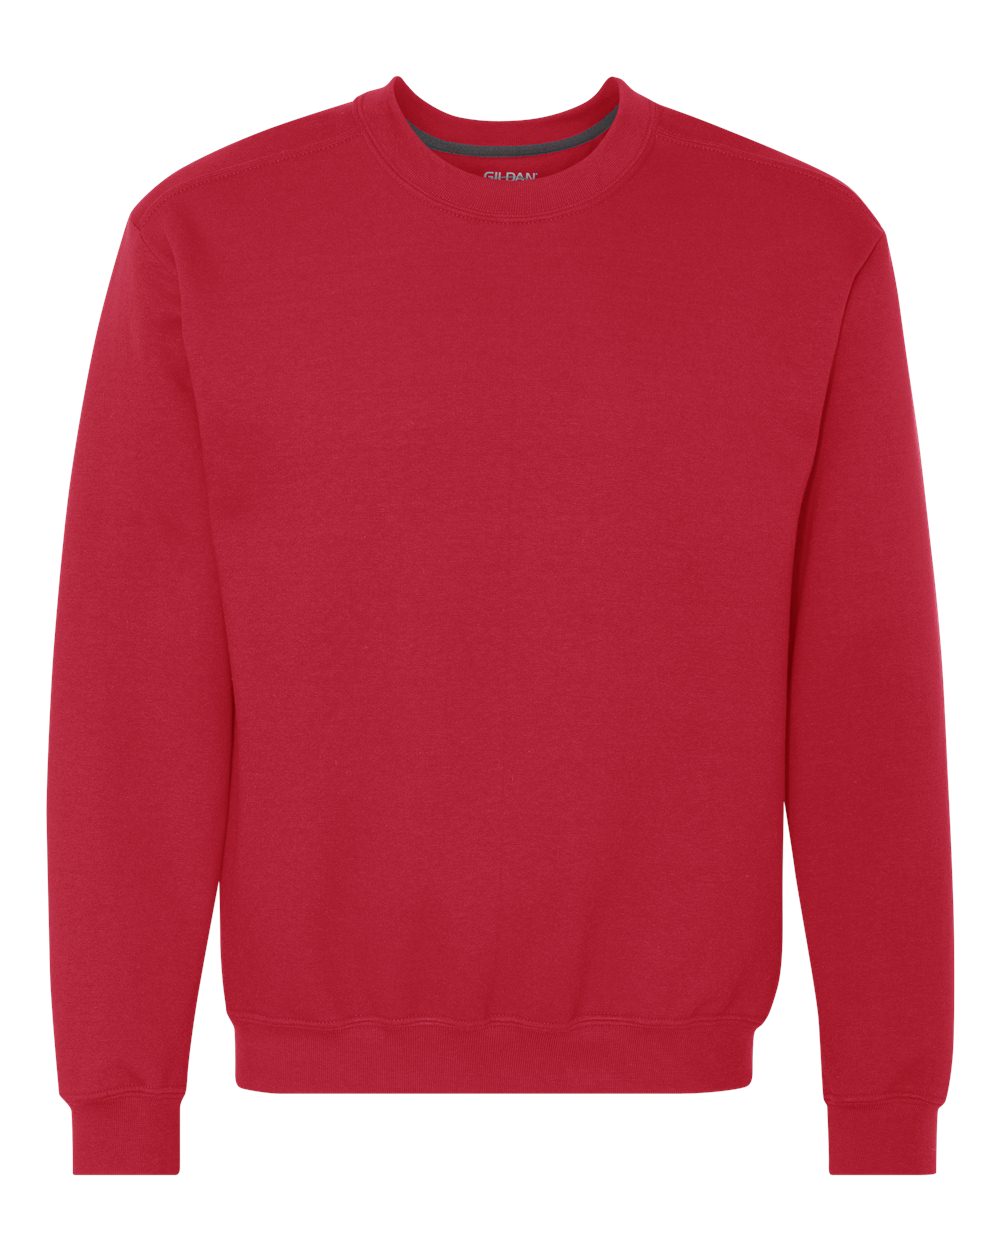 Gildan 92000 - Adult Premium Cotton Crew Neck Sweatshirt $13.28 - Men's ...